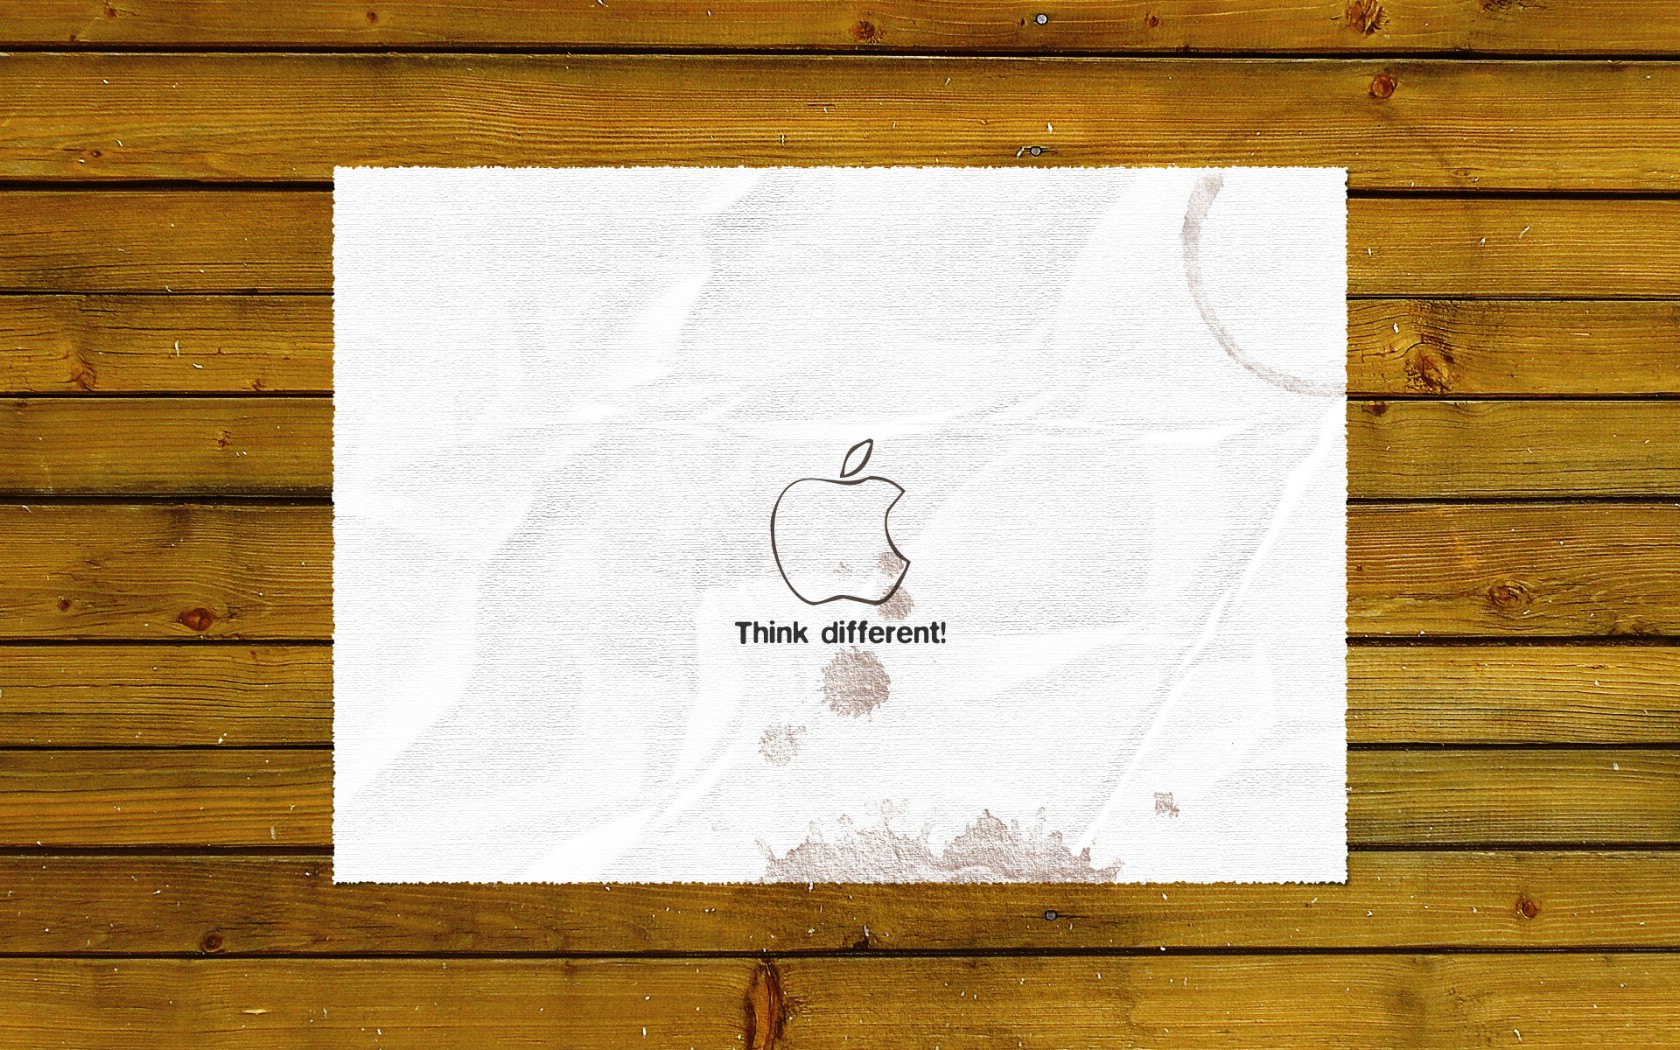 壁纸1680x1050Apple主题 80 5壁纸 Apple主题壁纸 Apple主题图片 Apple主题素材 系统壁纸 系统图库 系统图片素材桌面壁纸